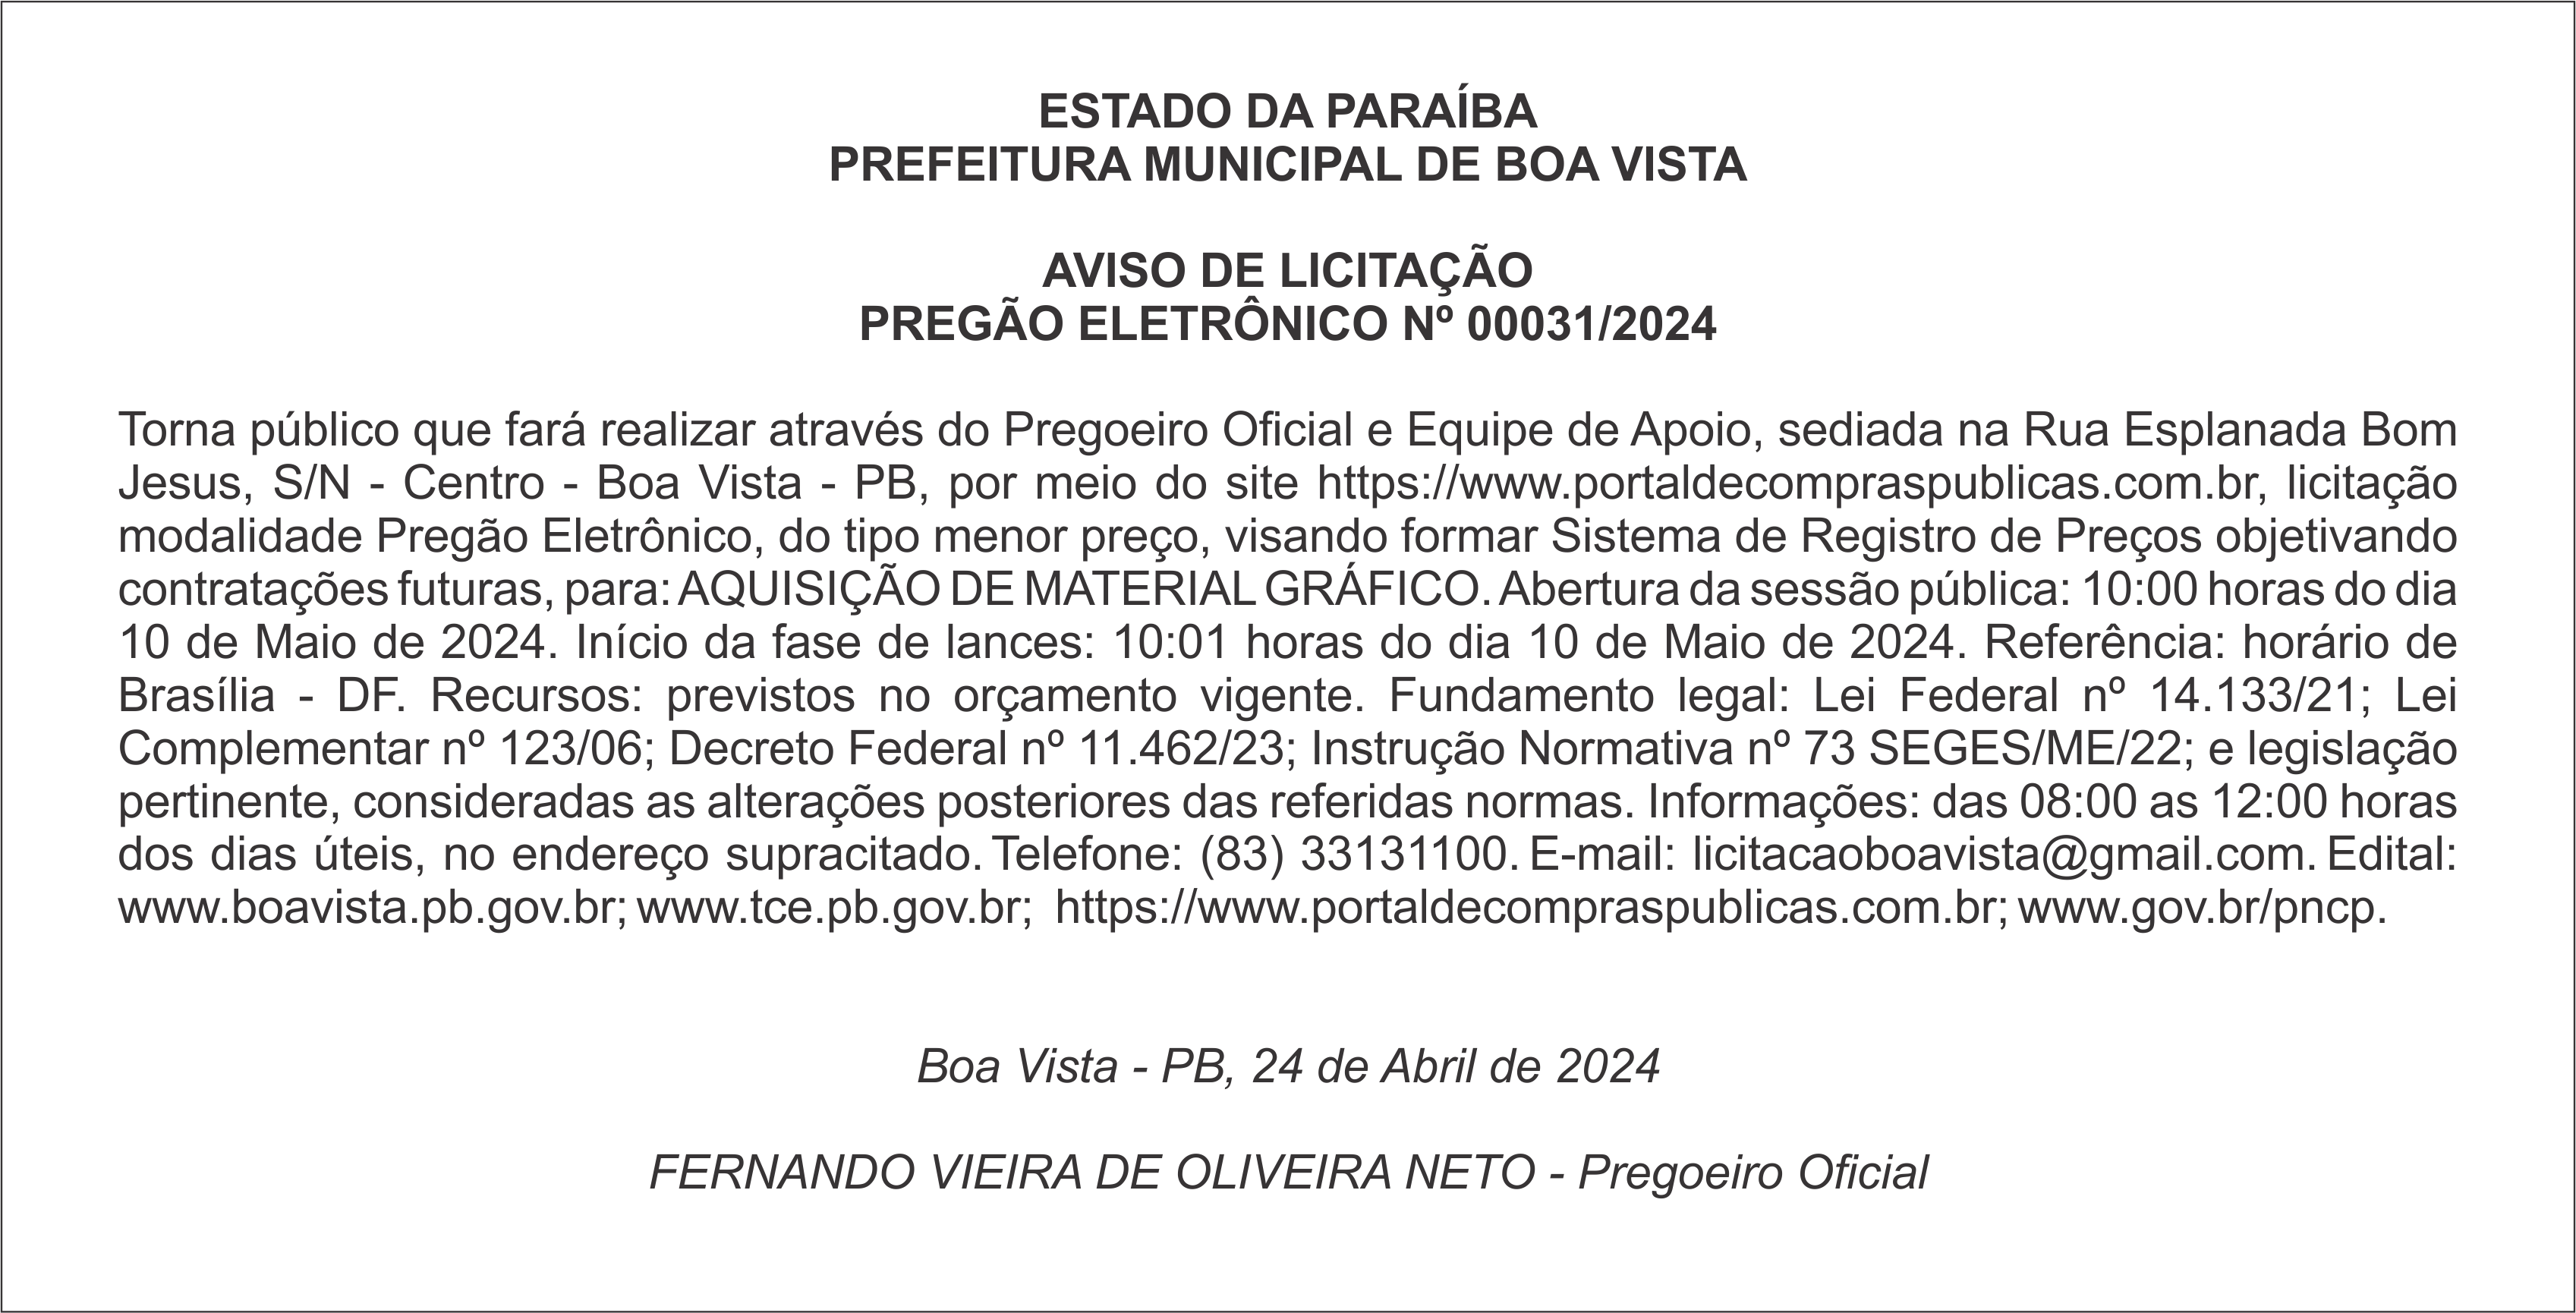 PREFEITURA MUNICIPAL DE BOA VISTA – AVISO DE LICITAÇÃO – PREGÃO ELETRÔNICO Nº 00031/2024